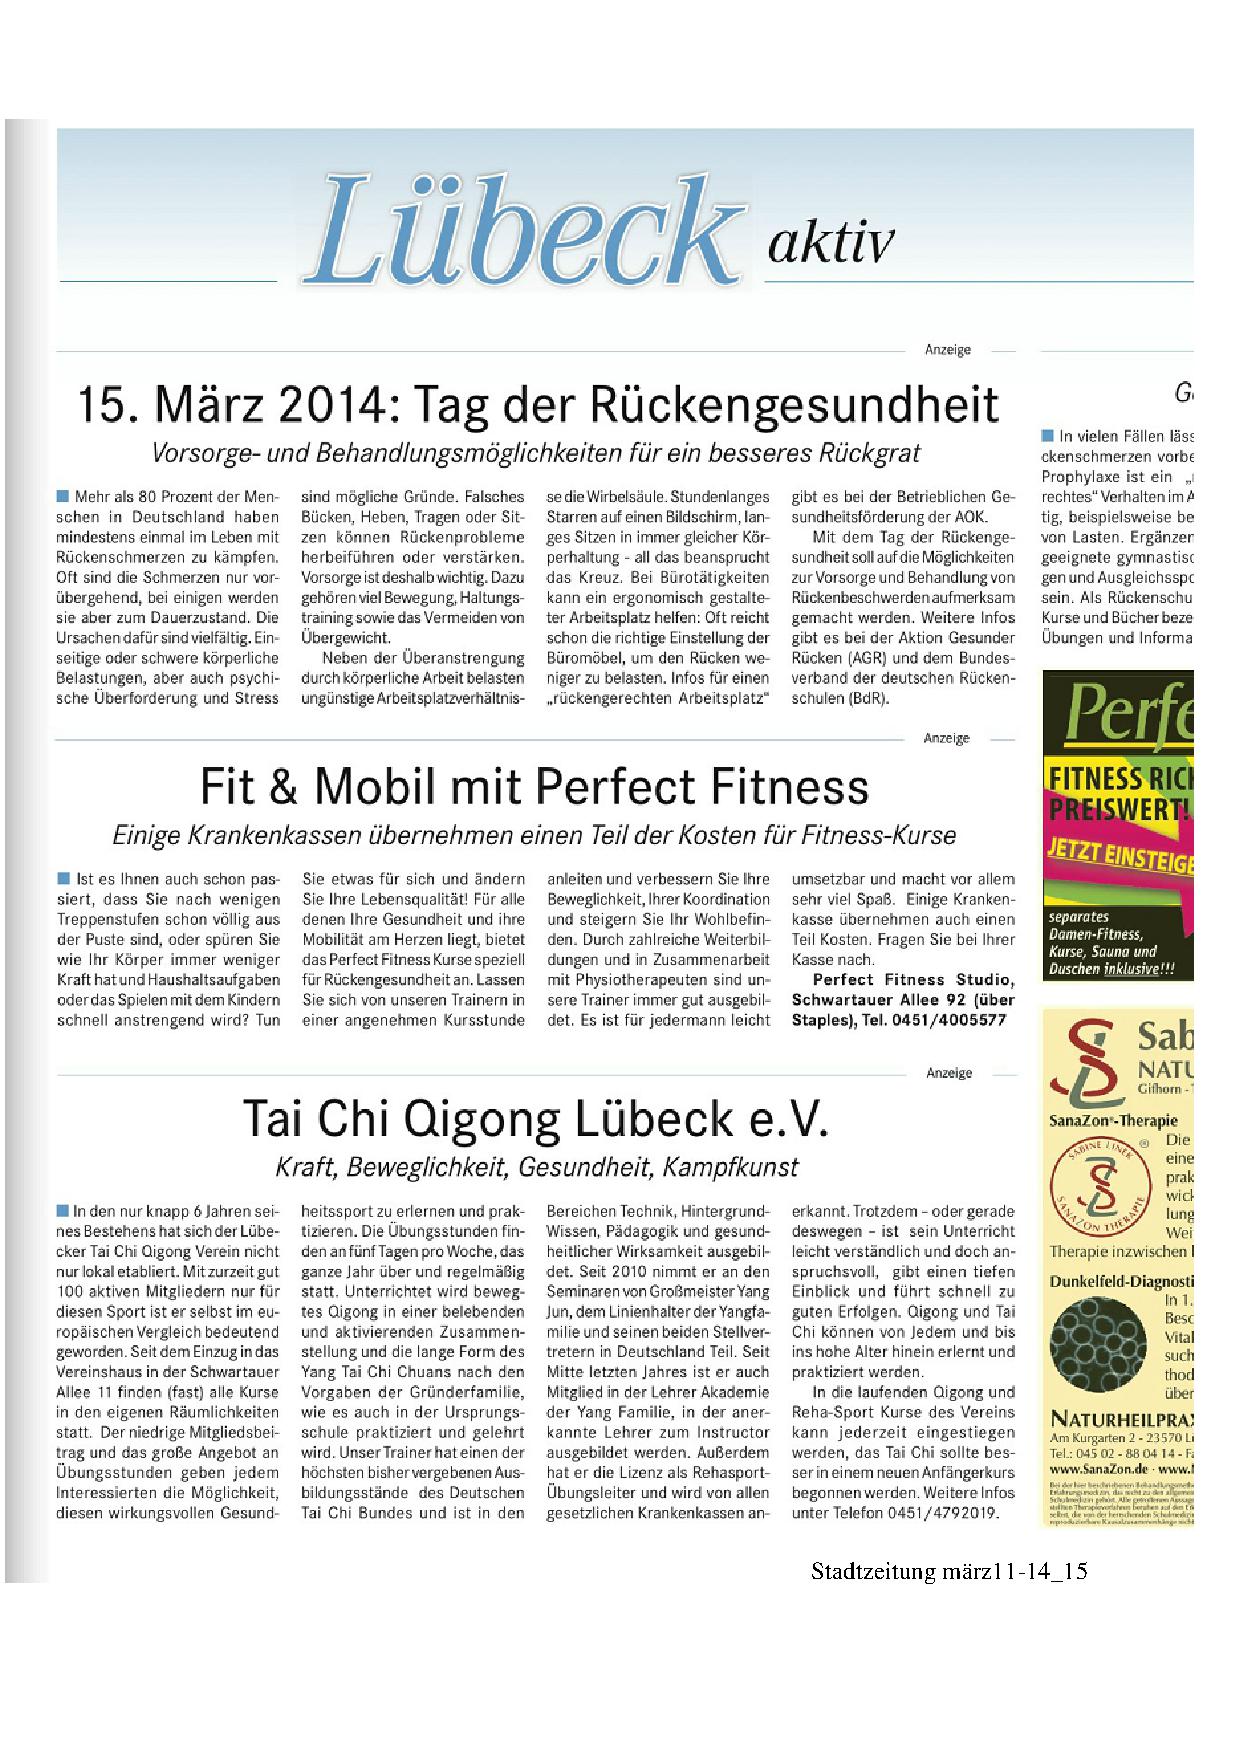 Stadtzeitung märz 14